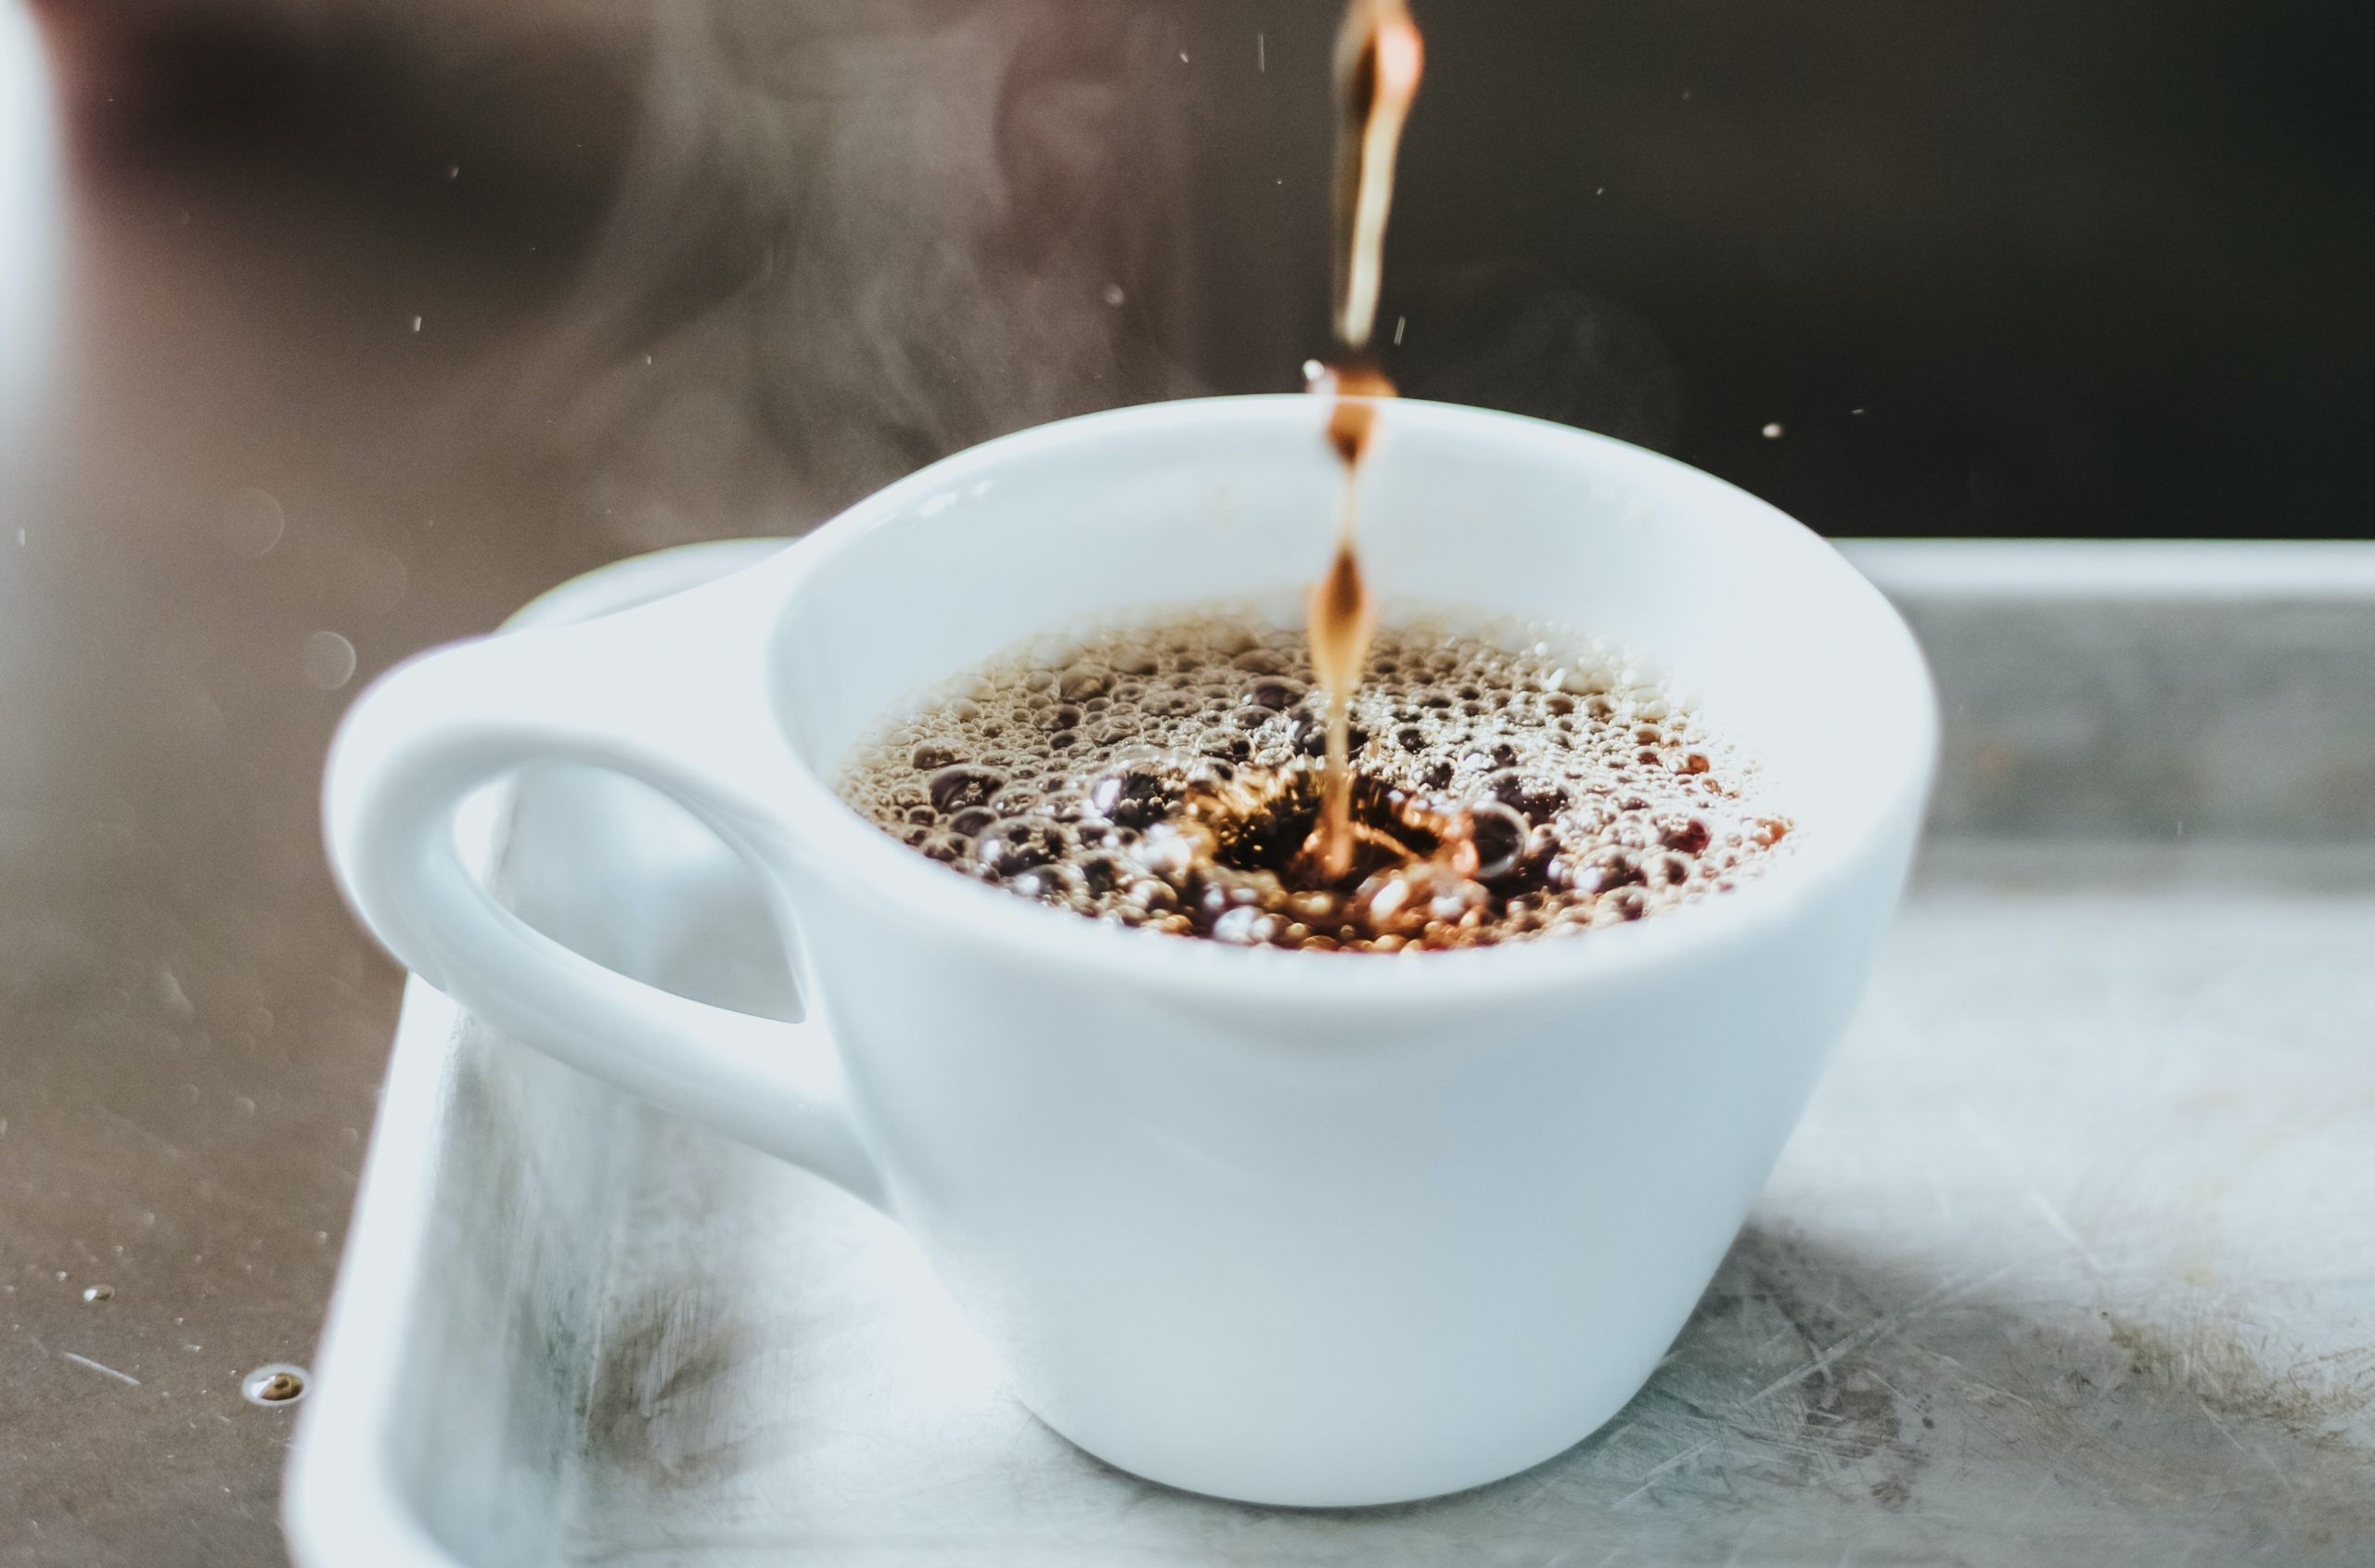 8 φάρμακα που δεν πρέπει να συνδυάζετε με τον καφέ – Μπορεί να είναι επικίνδυνο για την υγεία σας